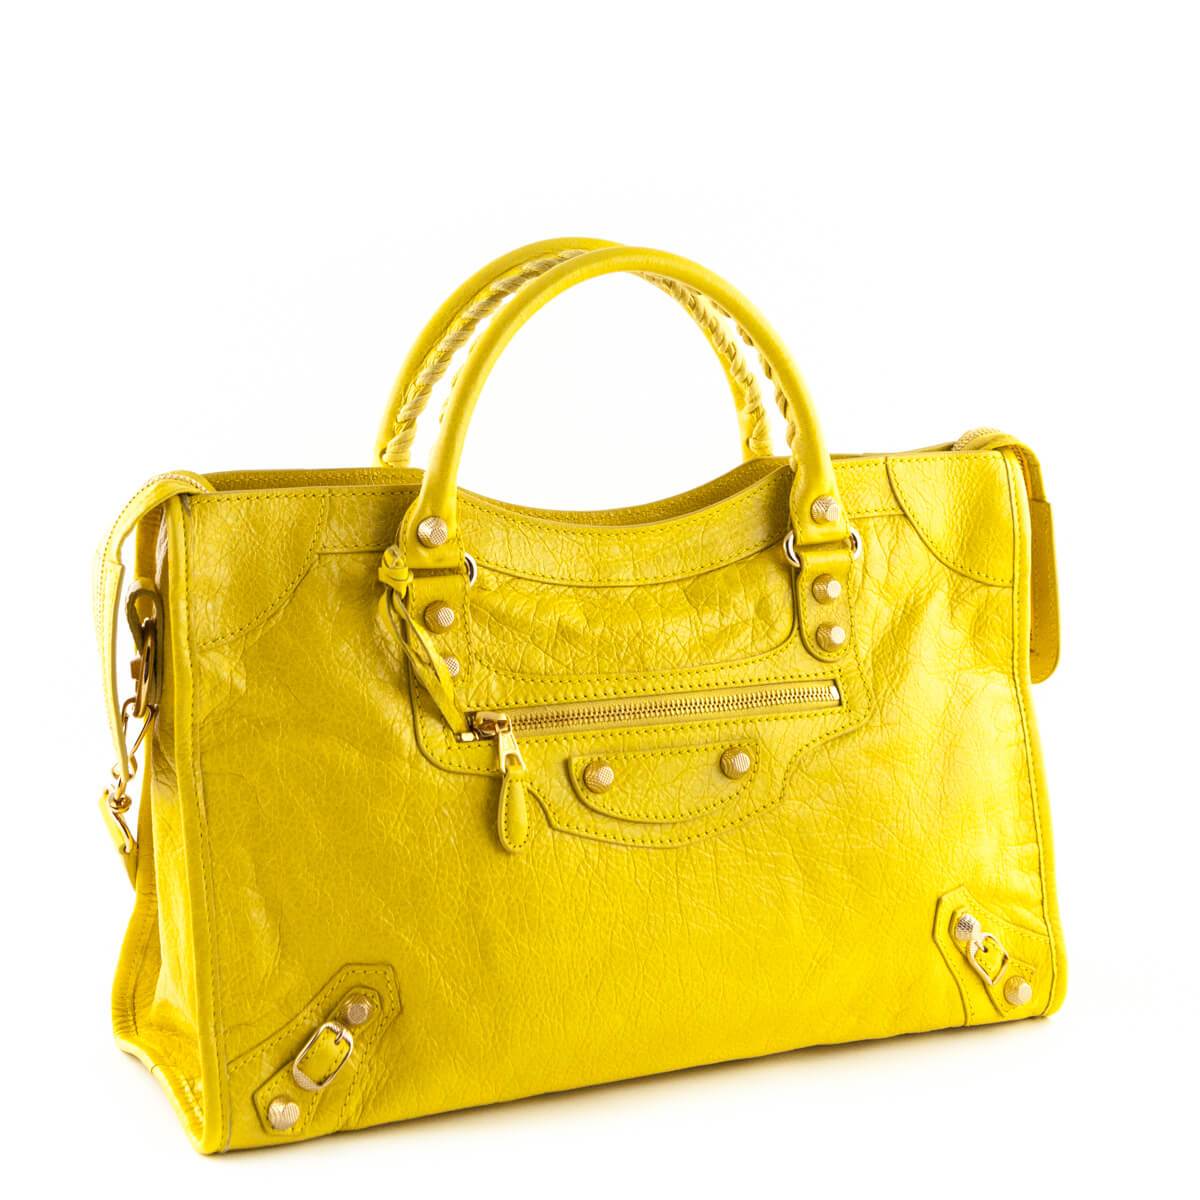 Balenciaga Curry Lambskin Giant 12 Gold City Bag - Shop Balenciaga Handbags